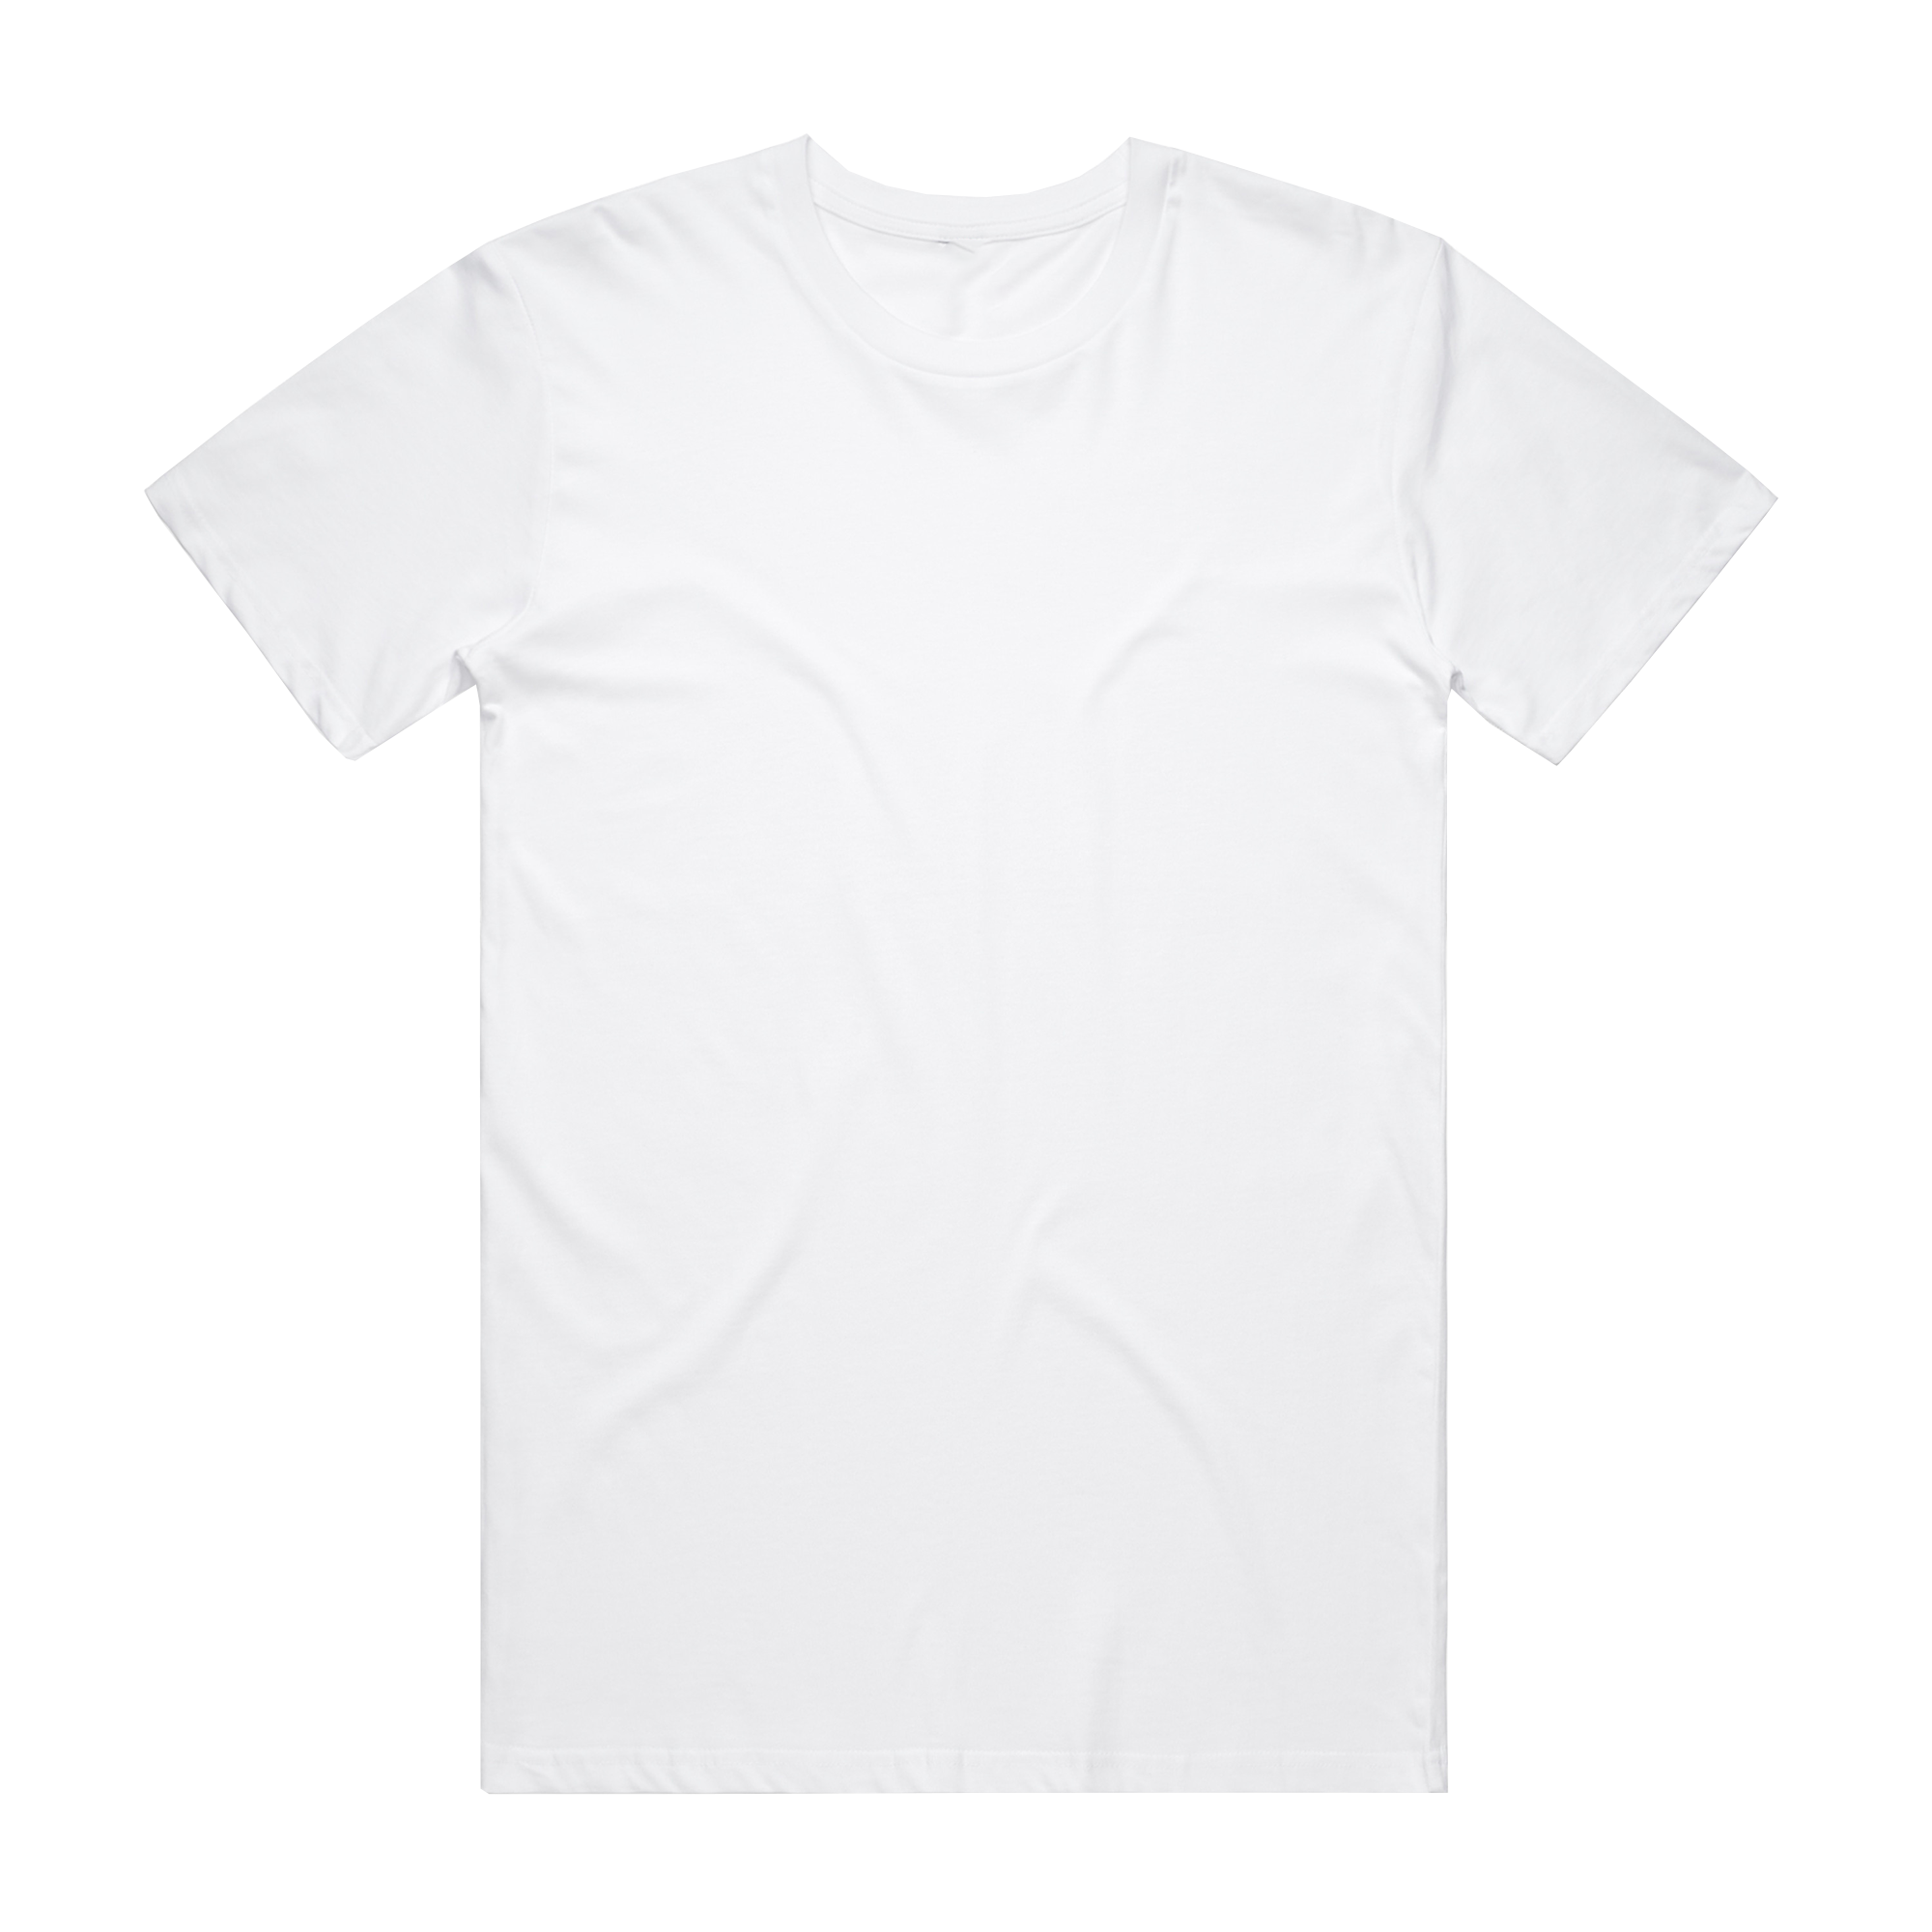 Orlando Weeks - LOJA: White T-Shirt